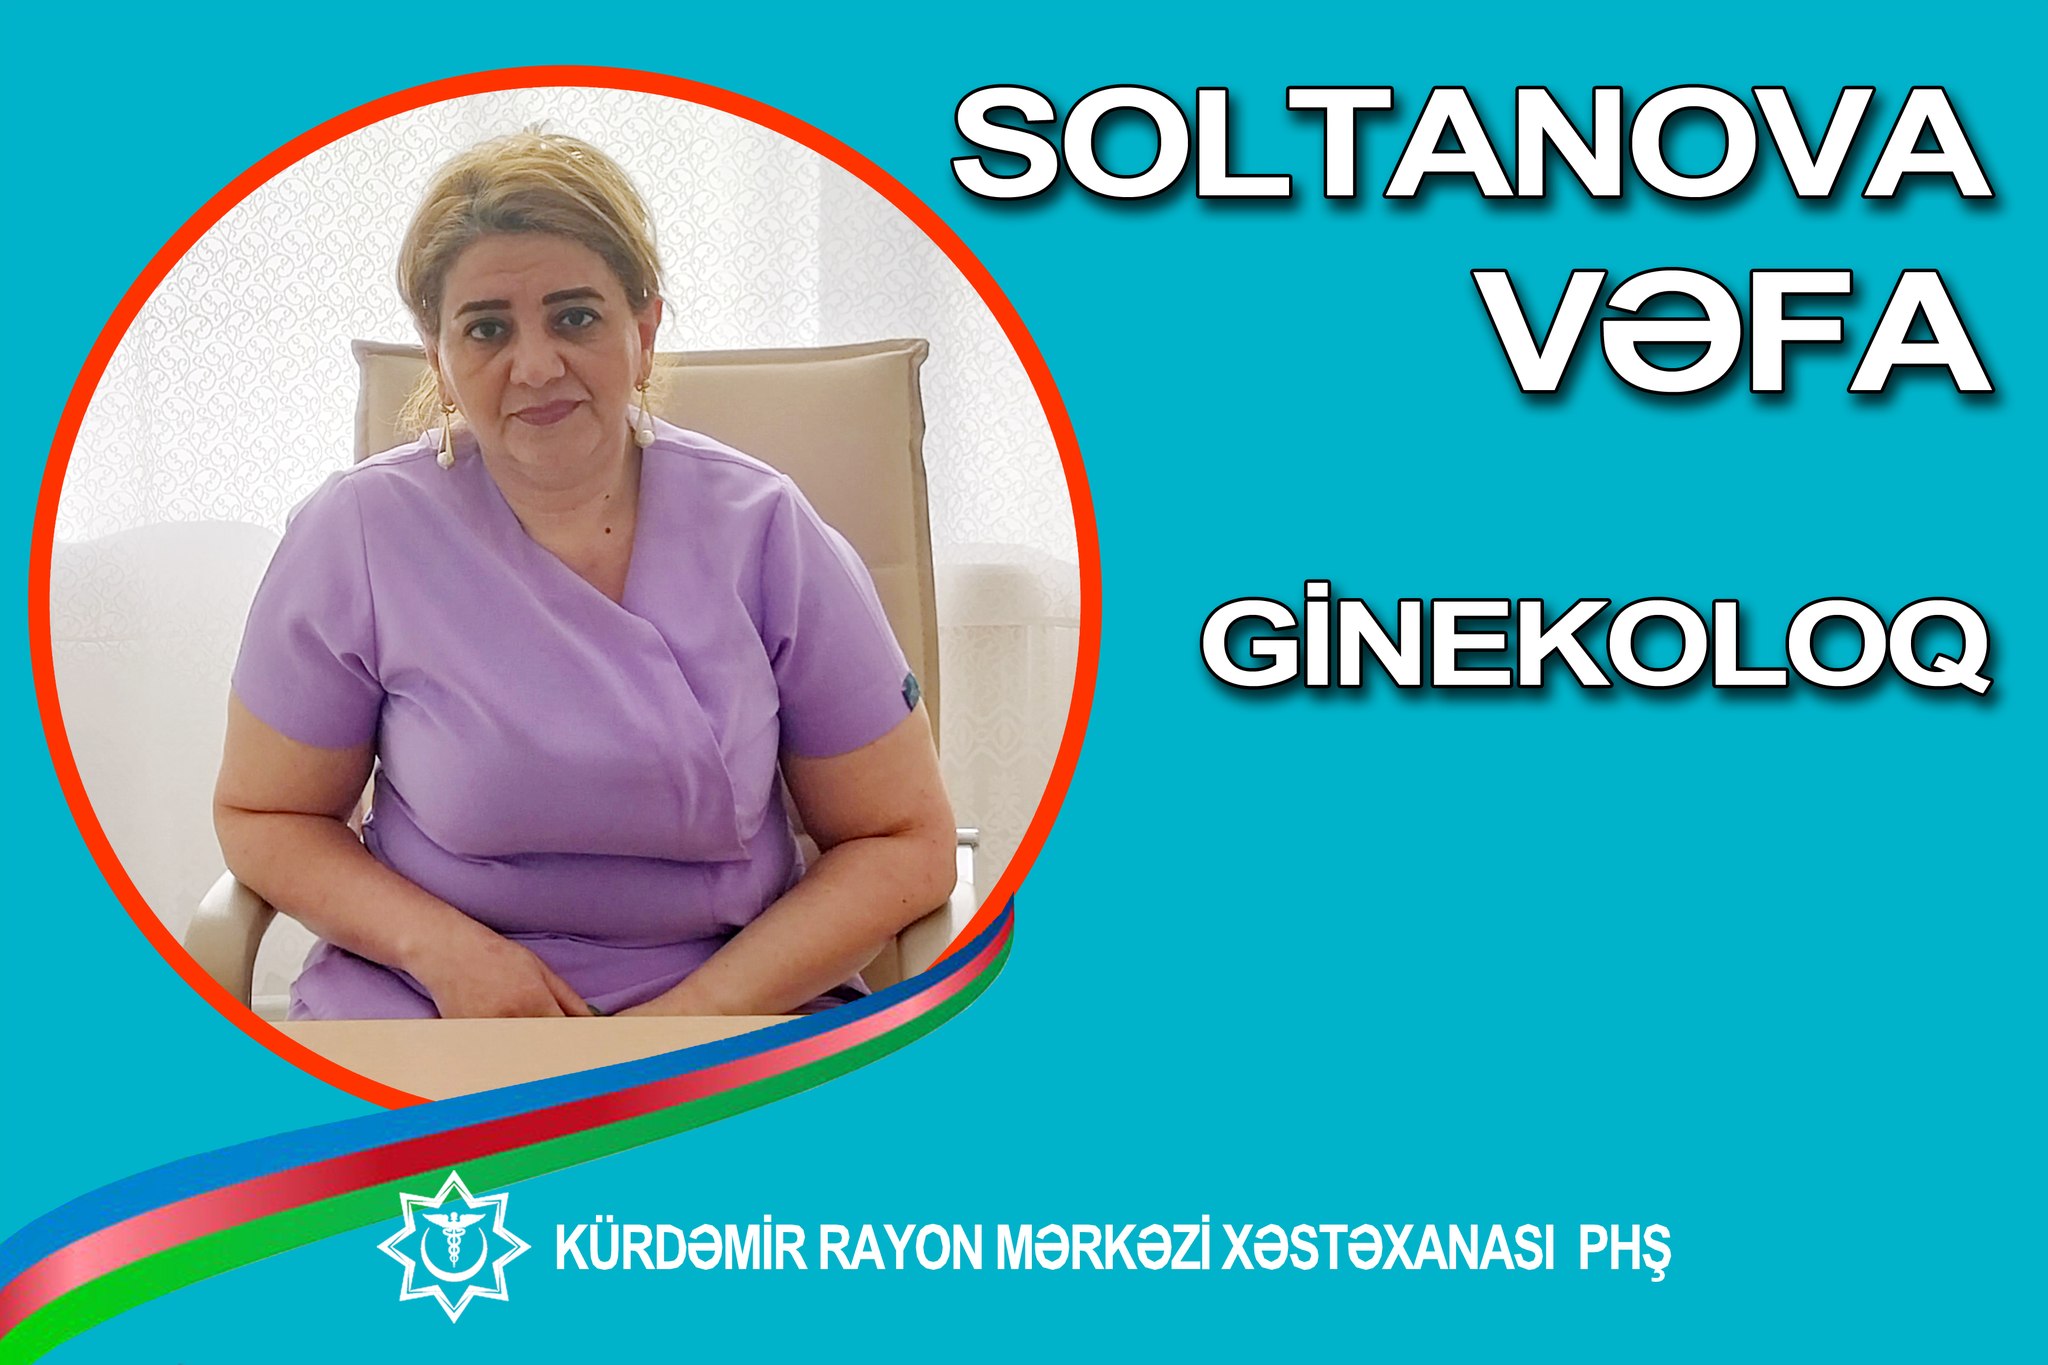 Mama-ginekoloq Vəfa Soltanova - “Həkimlərimizi tanıyaq!” rubrikası